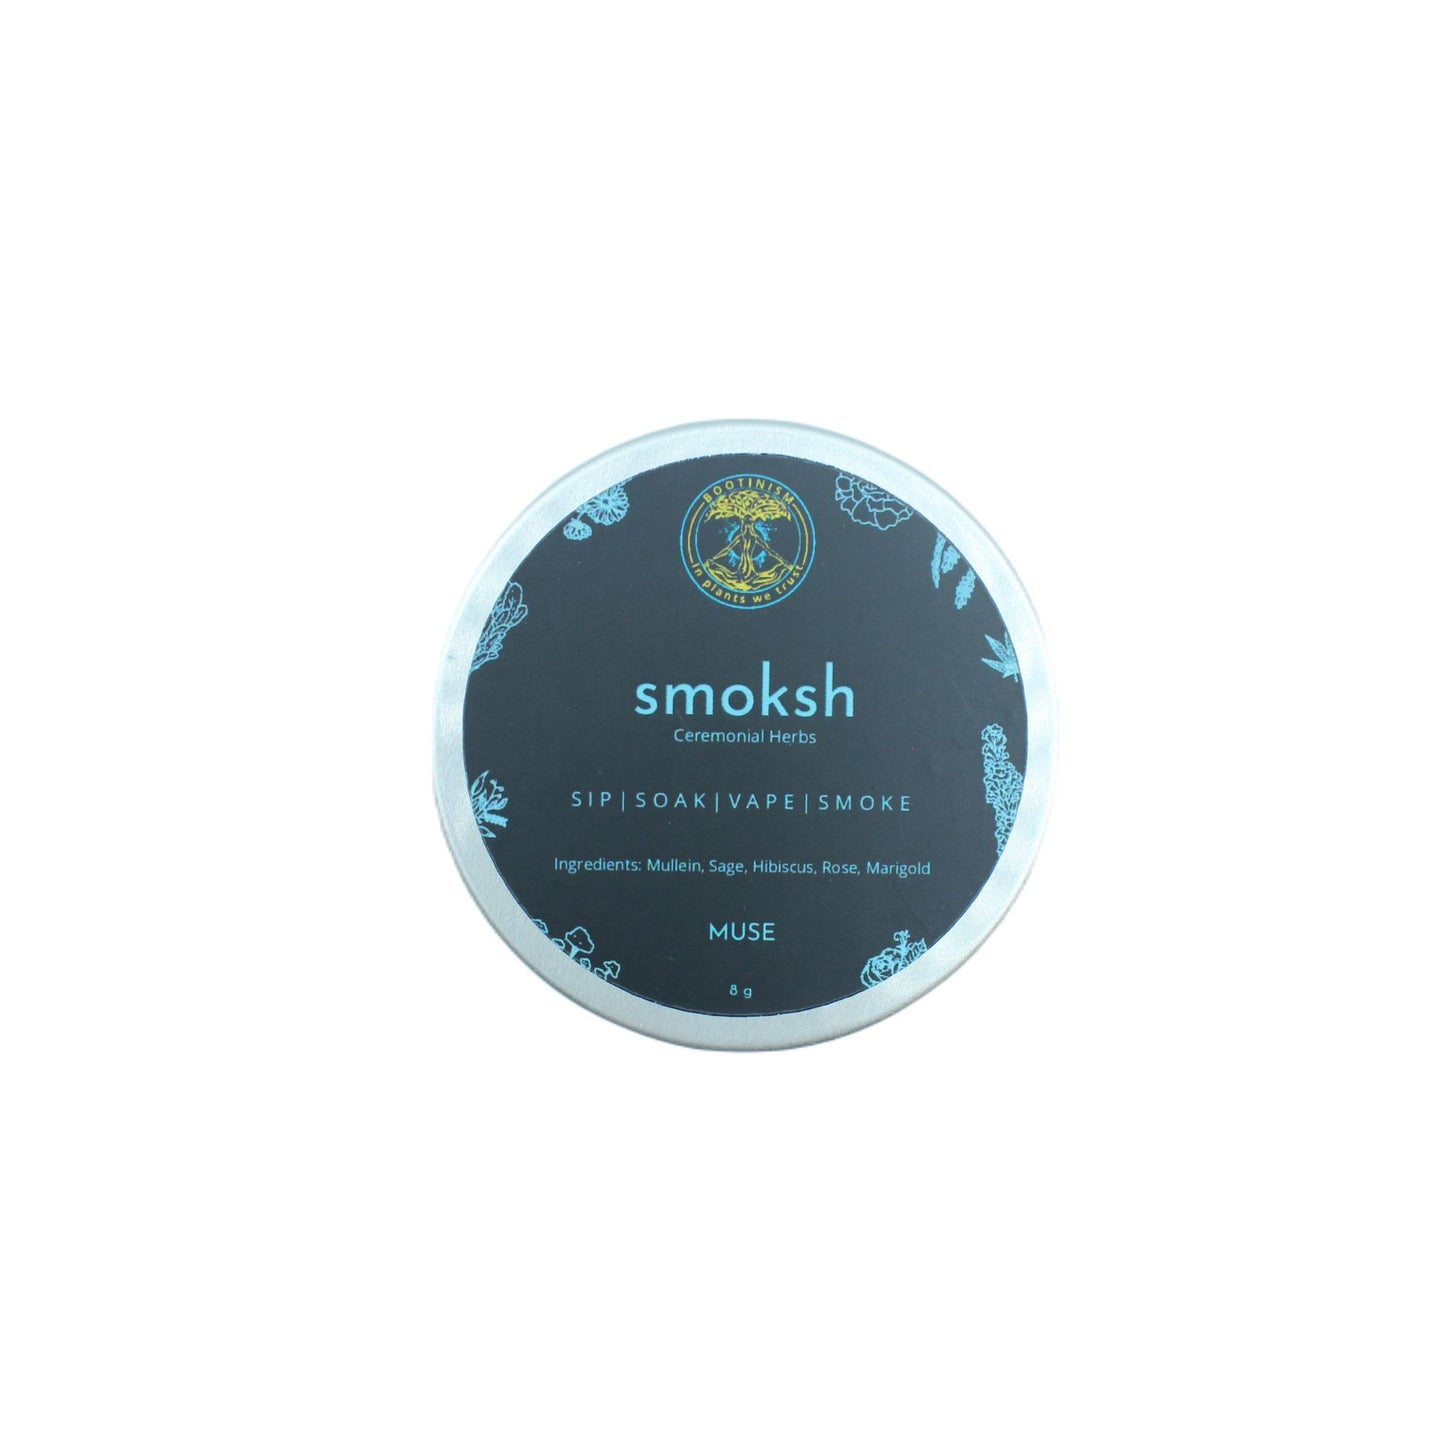 SMOKSH MUSE Herbal Smoking Blend 8g  HighJack India